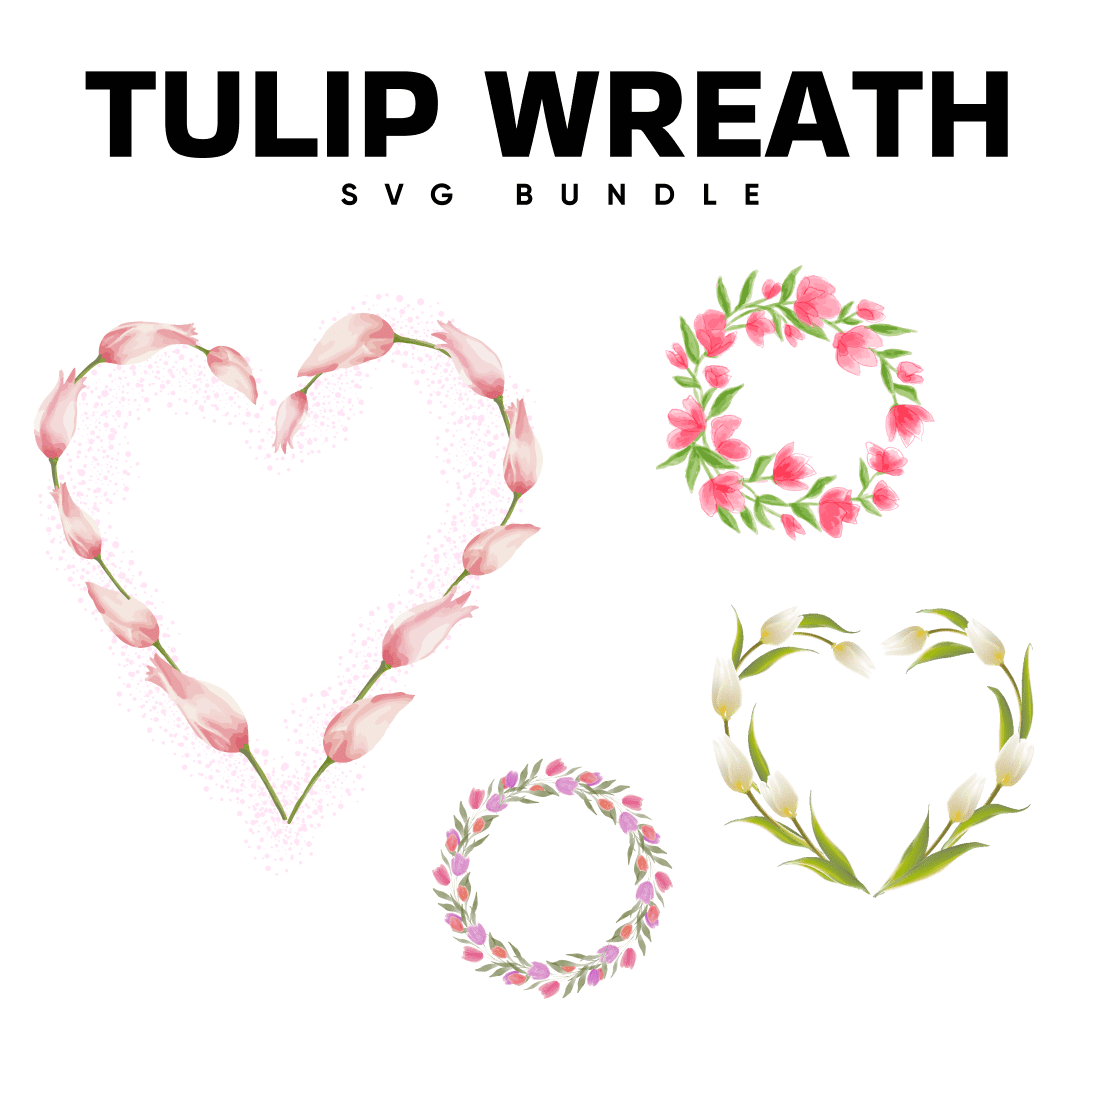 Tulip wreath svg bundle.